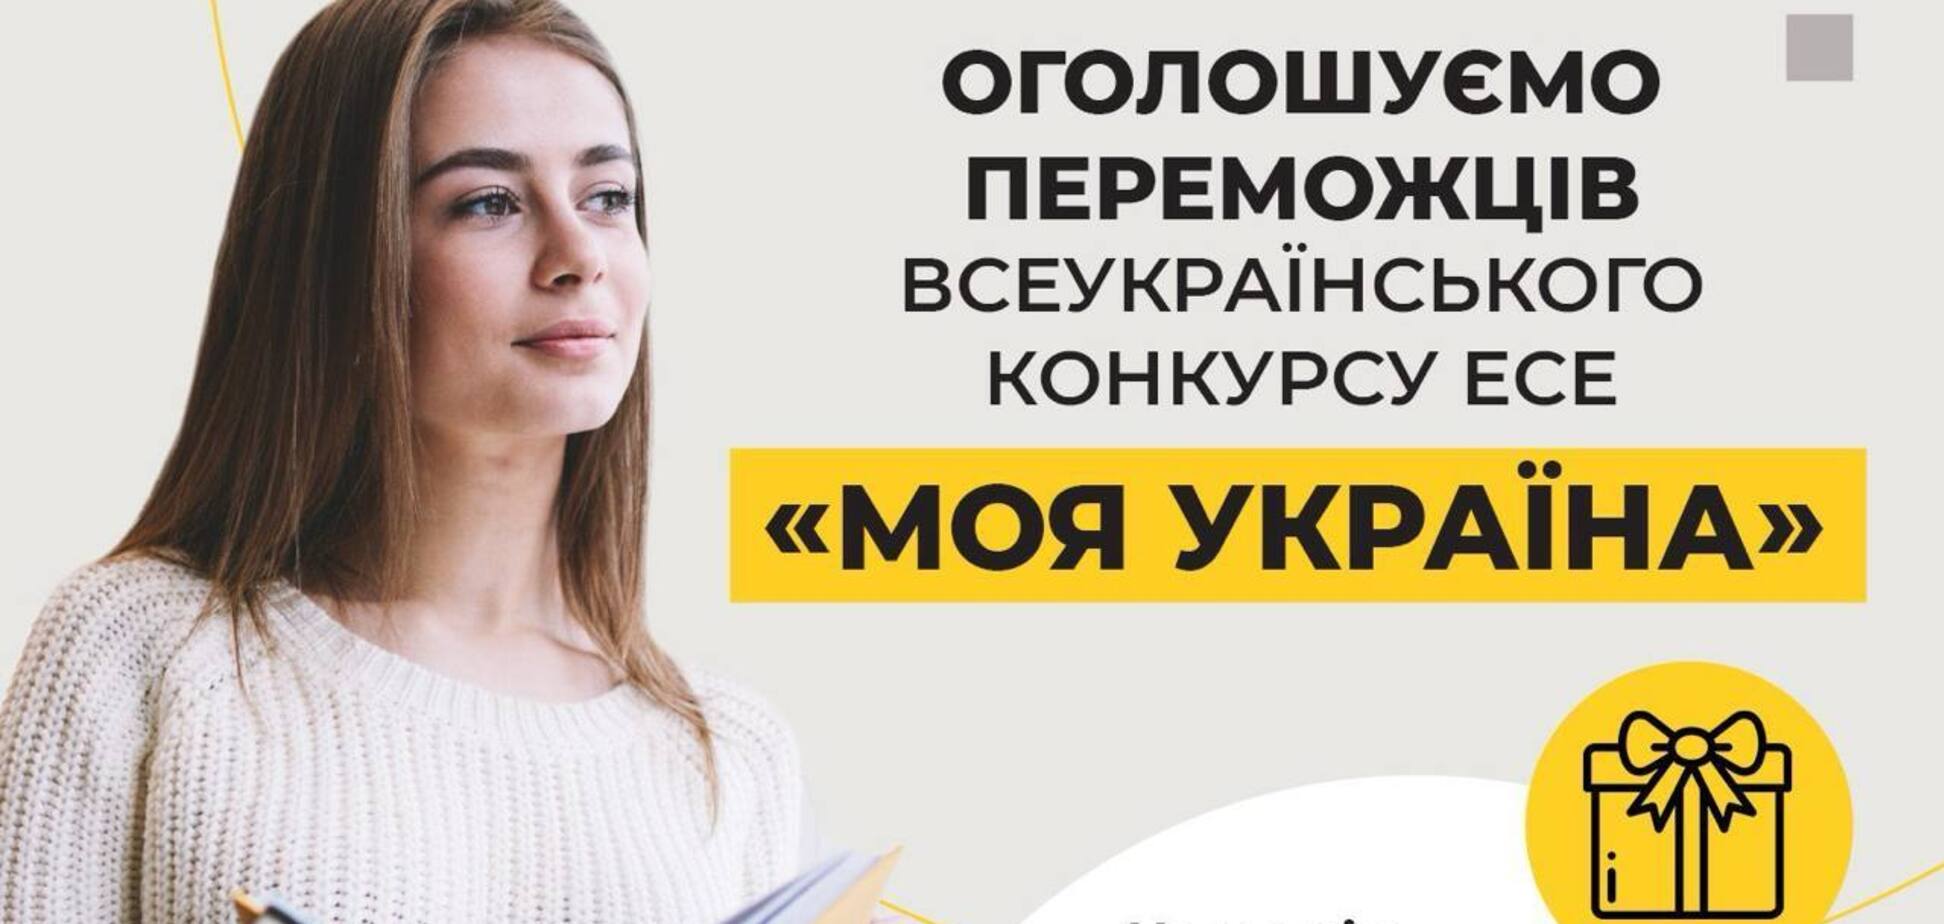 Оголошено переможців всеукраїнського конкурсу есе 'Моя Україна' від Фонду Ріната Ахметова